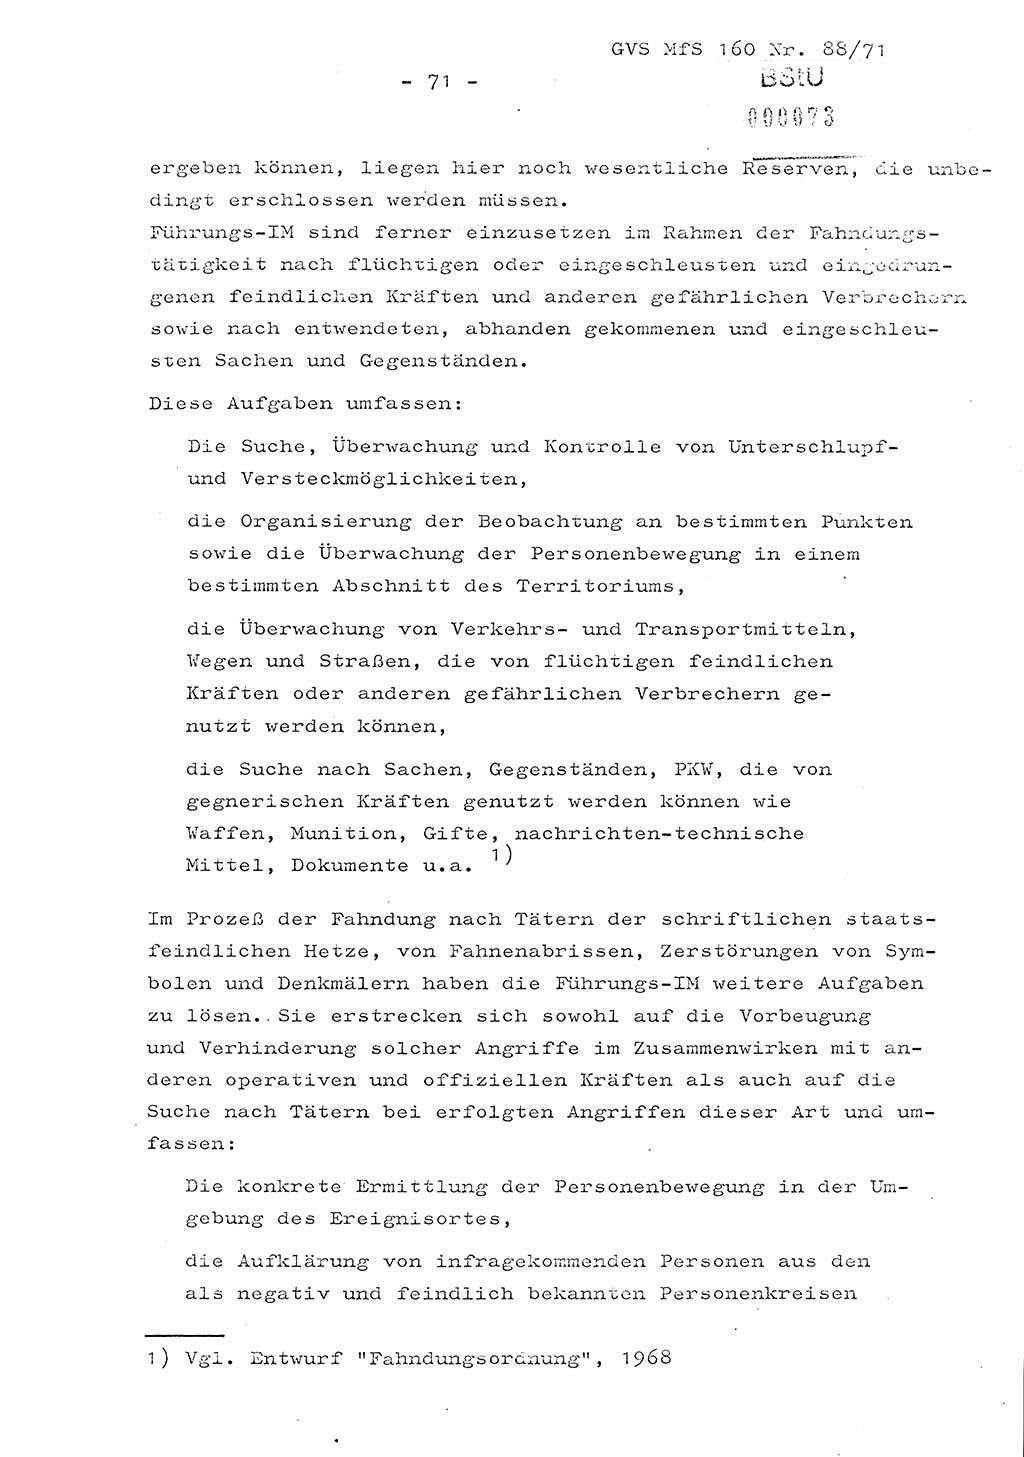 Dissertation Oberstleutnant Josef Schwarz (BV Schwerin), Major Fritz Amm (JHS), Hauptmann Peter Gräßler (JHS), Ministerium für Staatssicherheit (MfS) [Deutsche Demokratische Republik (DDR)], Juristische Hochschule (JHS), Geheime Verschlußsache (GVS) 160-88/71, Potsdam 1972, Seite 71 (Diss. MfS DDR JHS GVS 160-88/71 1972, S. 71)